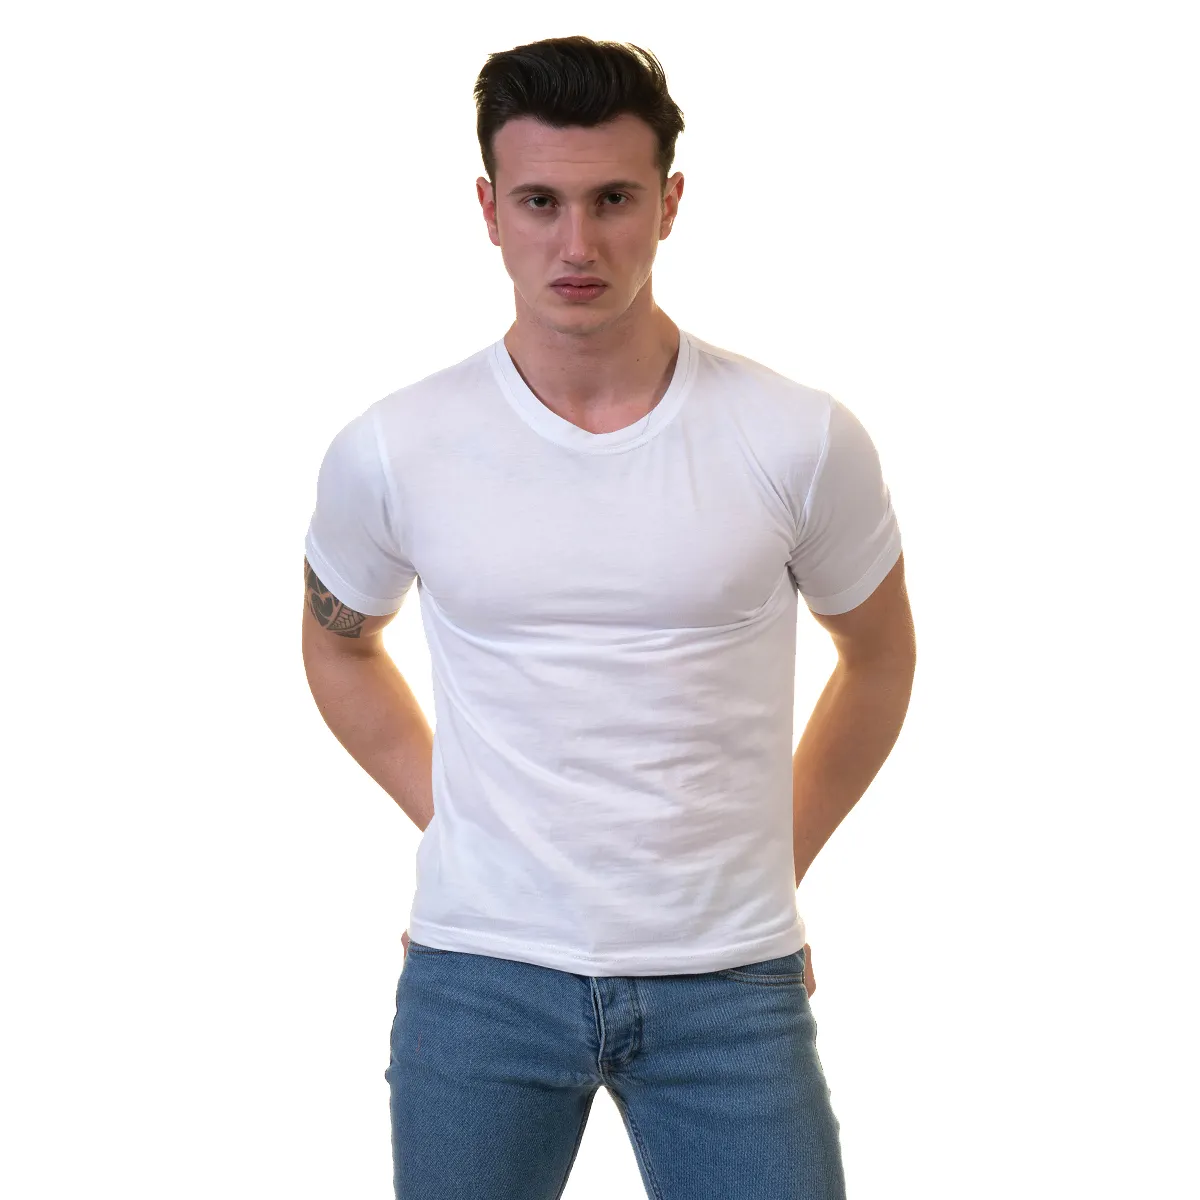 Großhandel billig hochwertige Polyester Rundhals ausschnitt schnelle Anpassung Drop Schulter T-Shirts, weißes T-Shirt, chr Made in Turkey